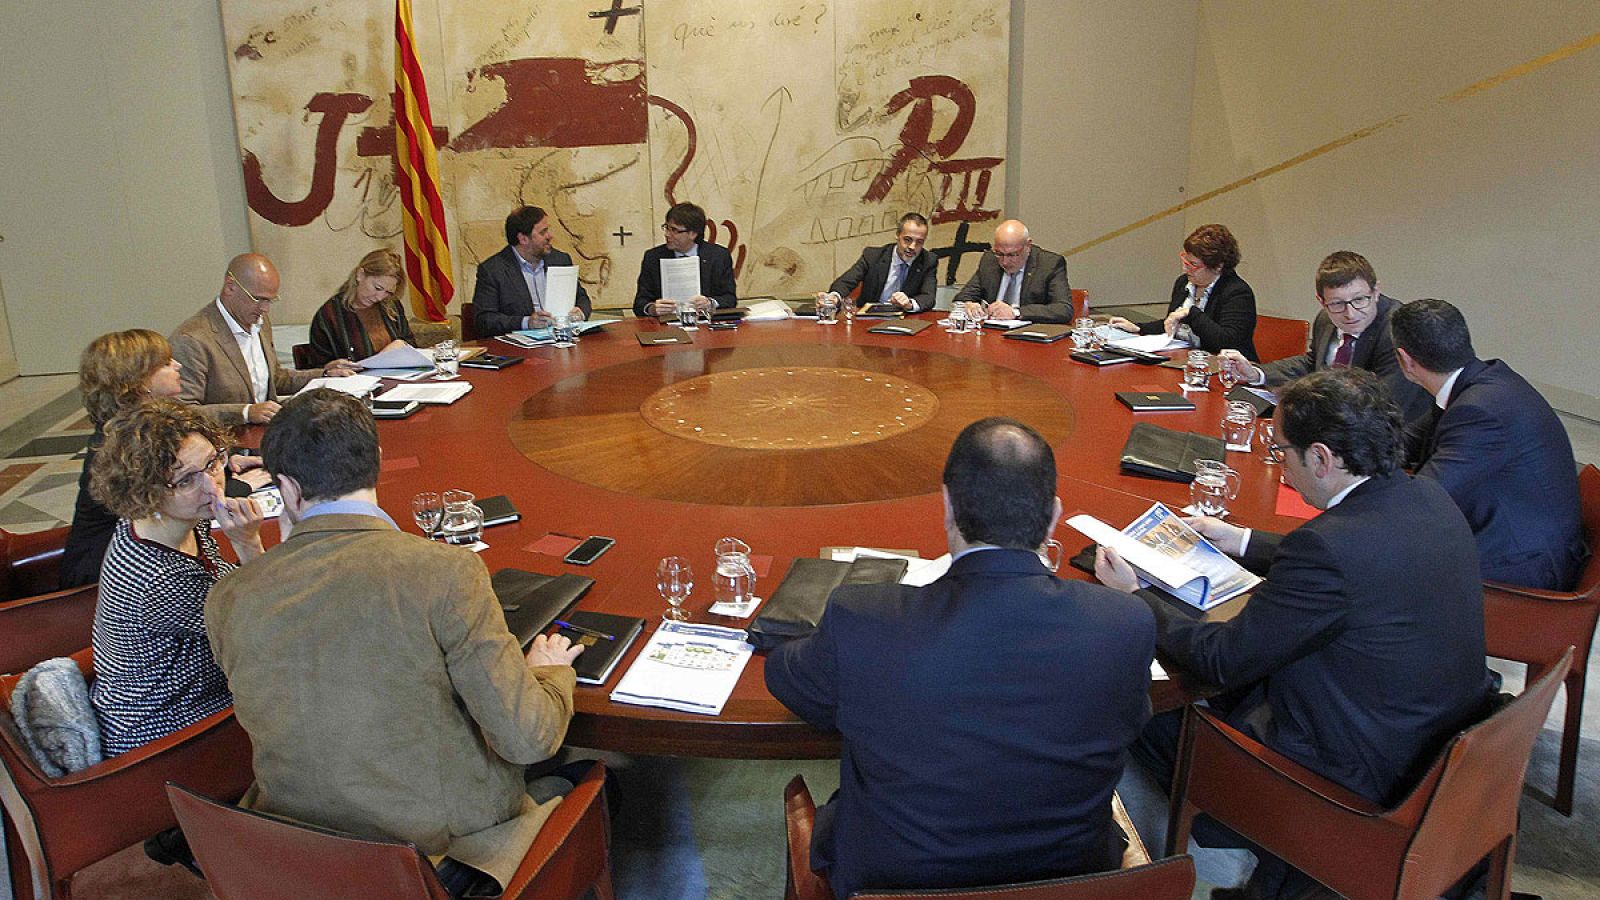 El presidente de la Generalitat, Carles Puigdemont, junto a los consellers, al inicio de la reunión de gobierno semanal